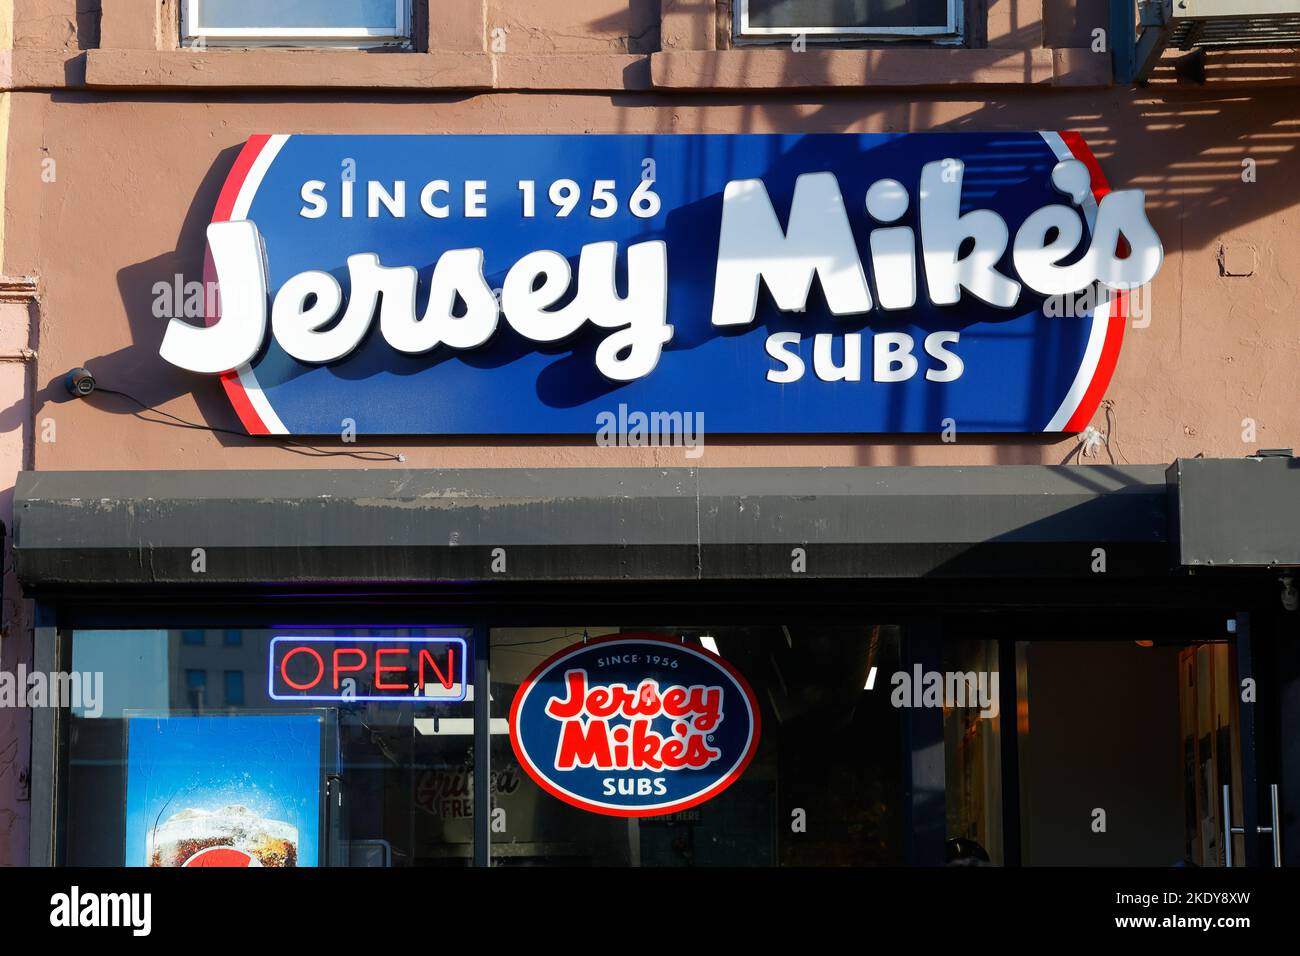 Signalisation pour Jersey Mike's Subs dans un point de vente de New York. Banque D'Images